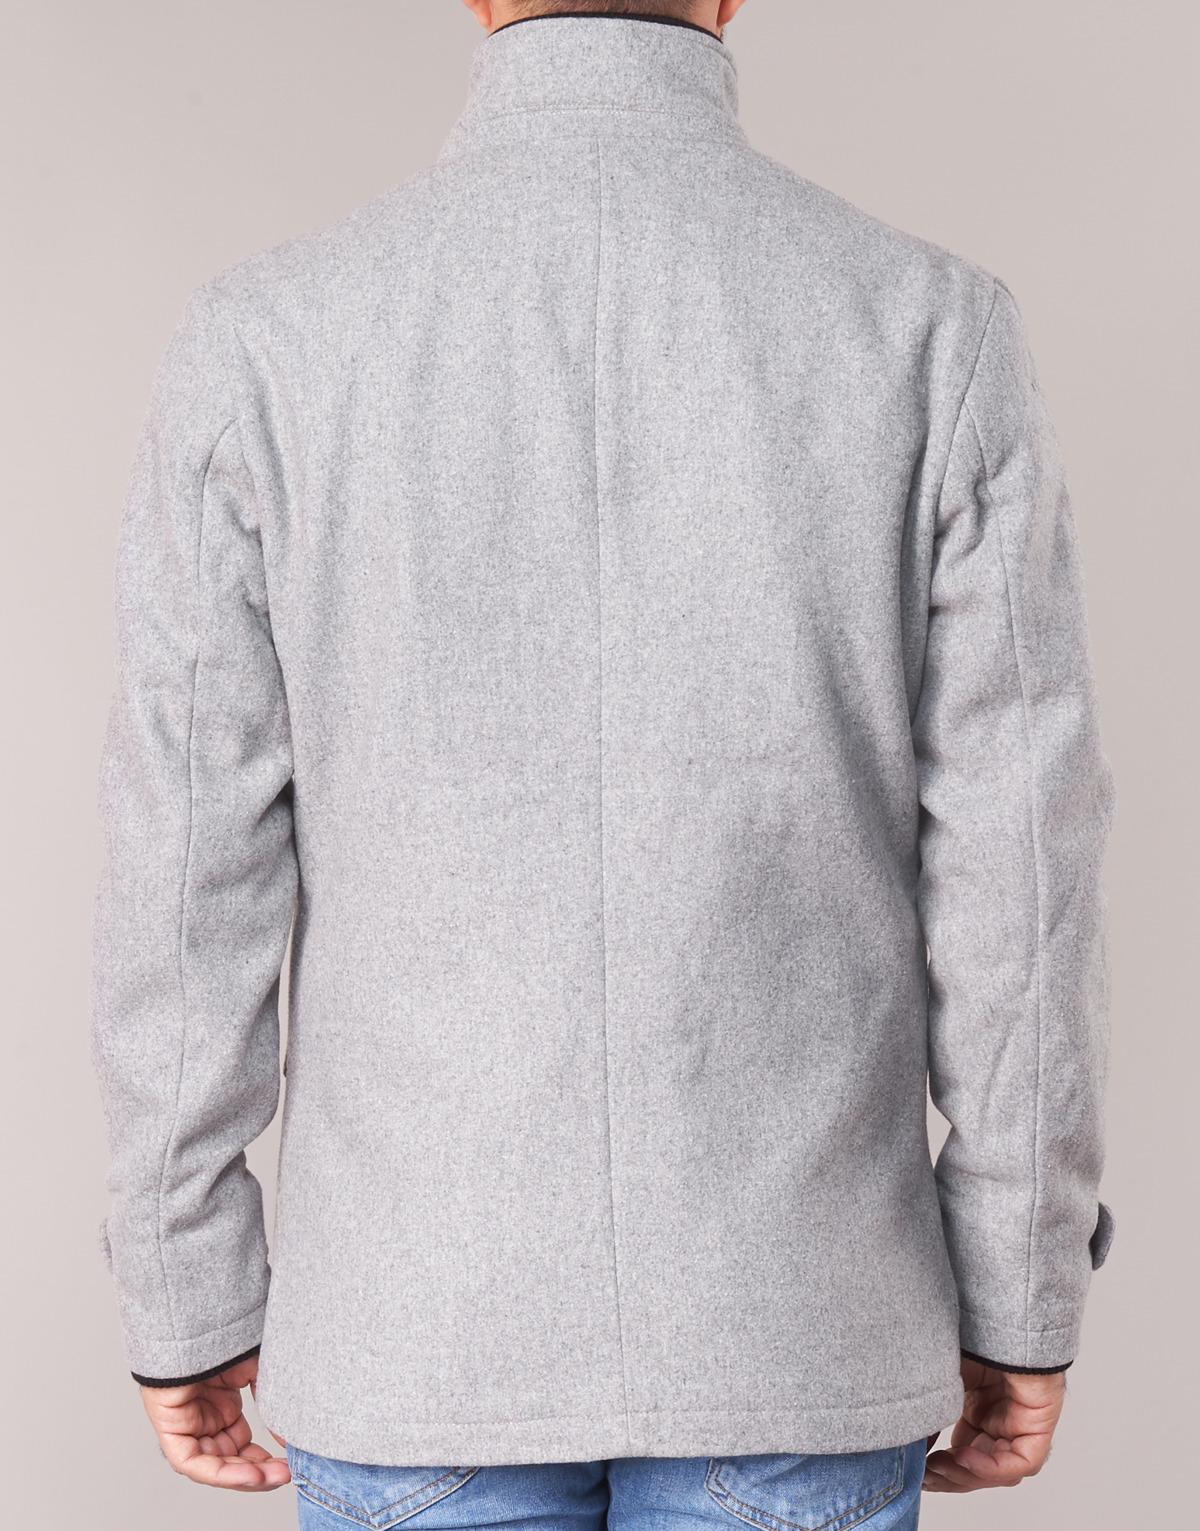 Jack & Jones Joe Core Coat in Grey (Grey) for Men - Lyst